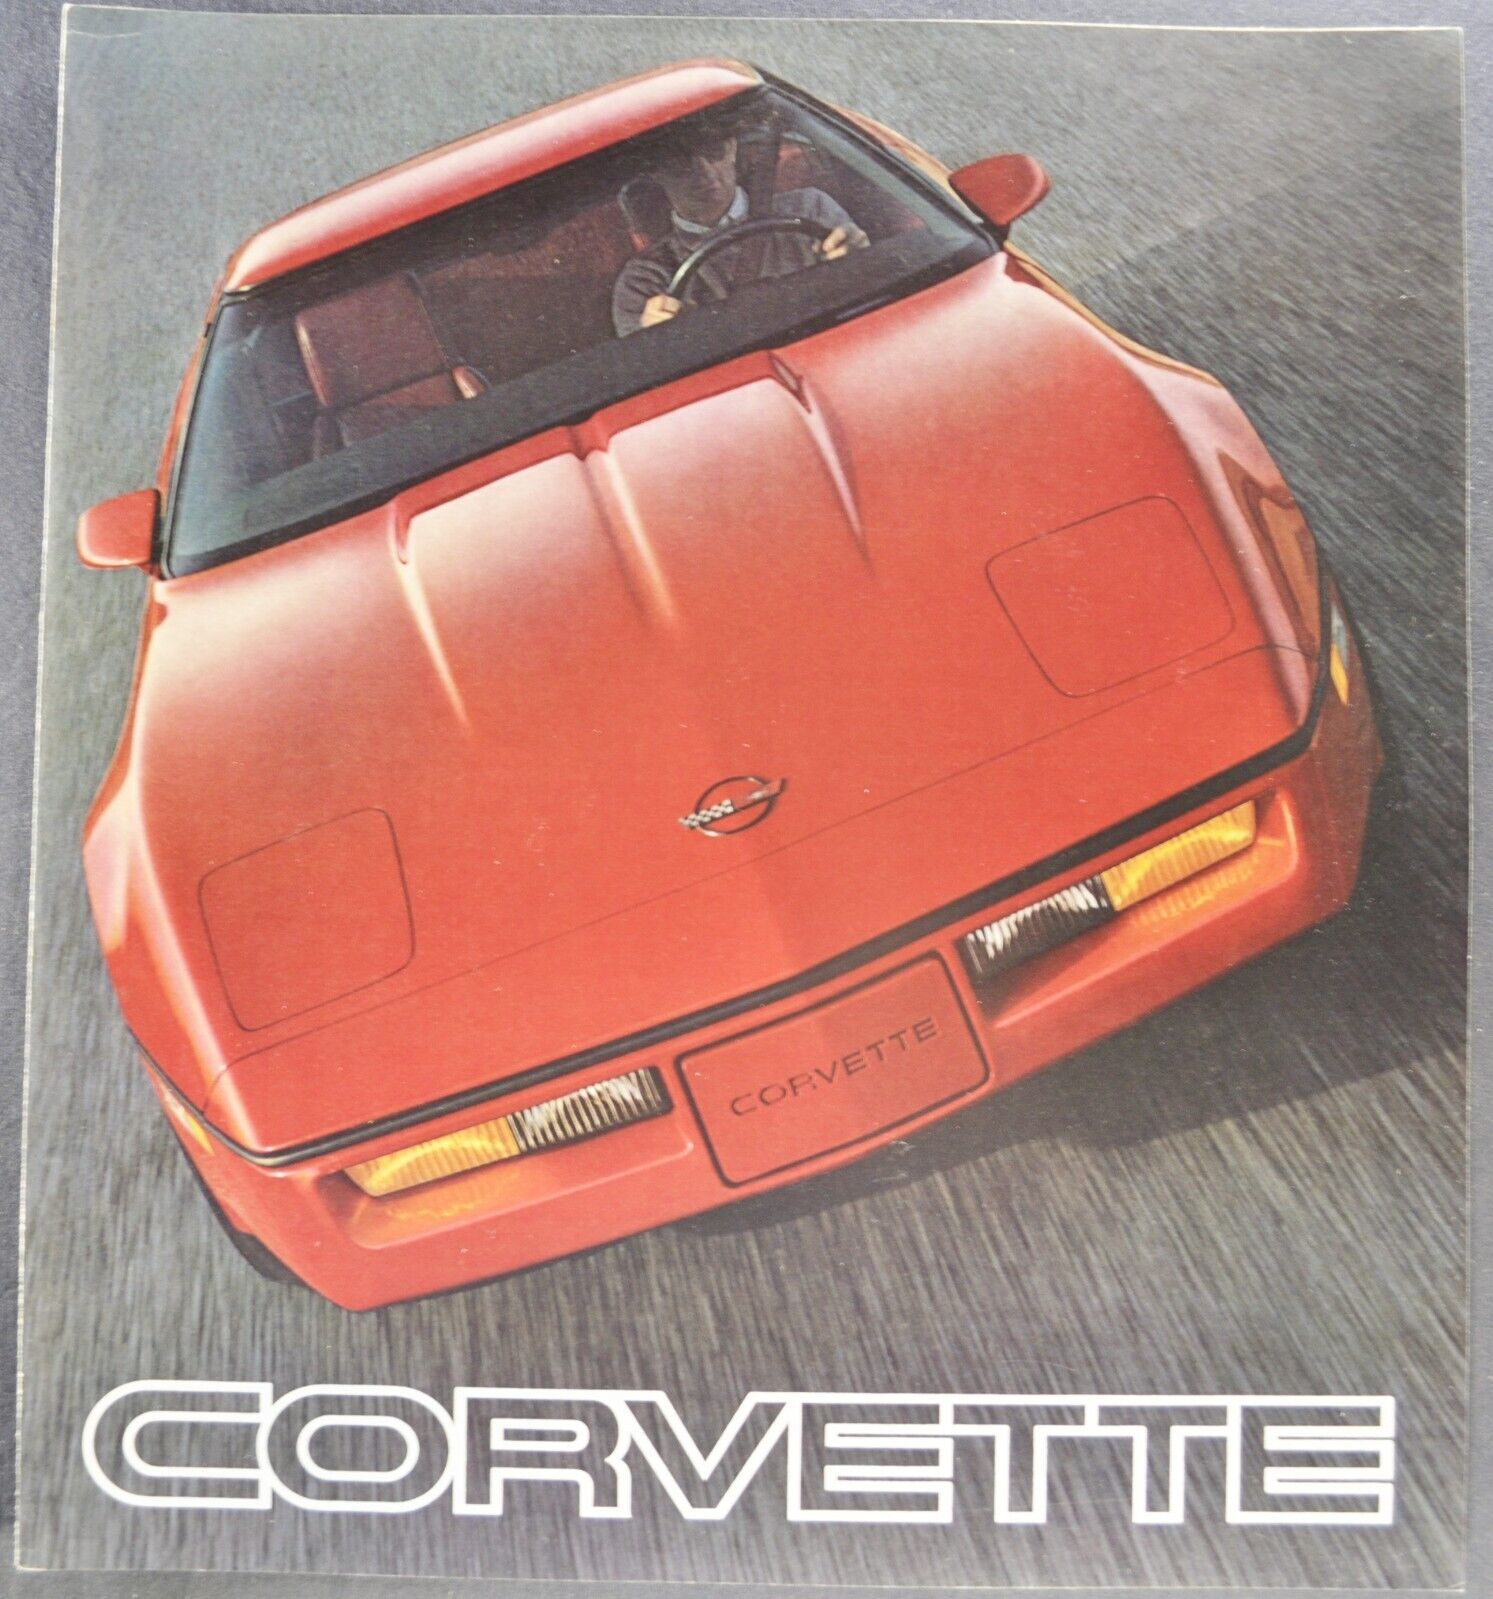 1985 Chevrolet Corvette Large Sales Brochure Folder Excellent Original 85